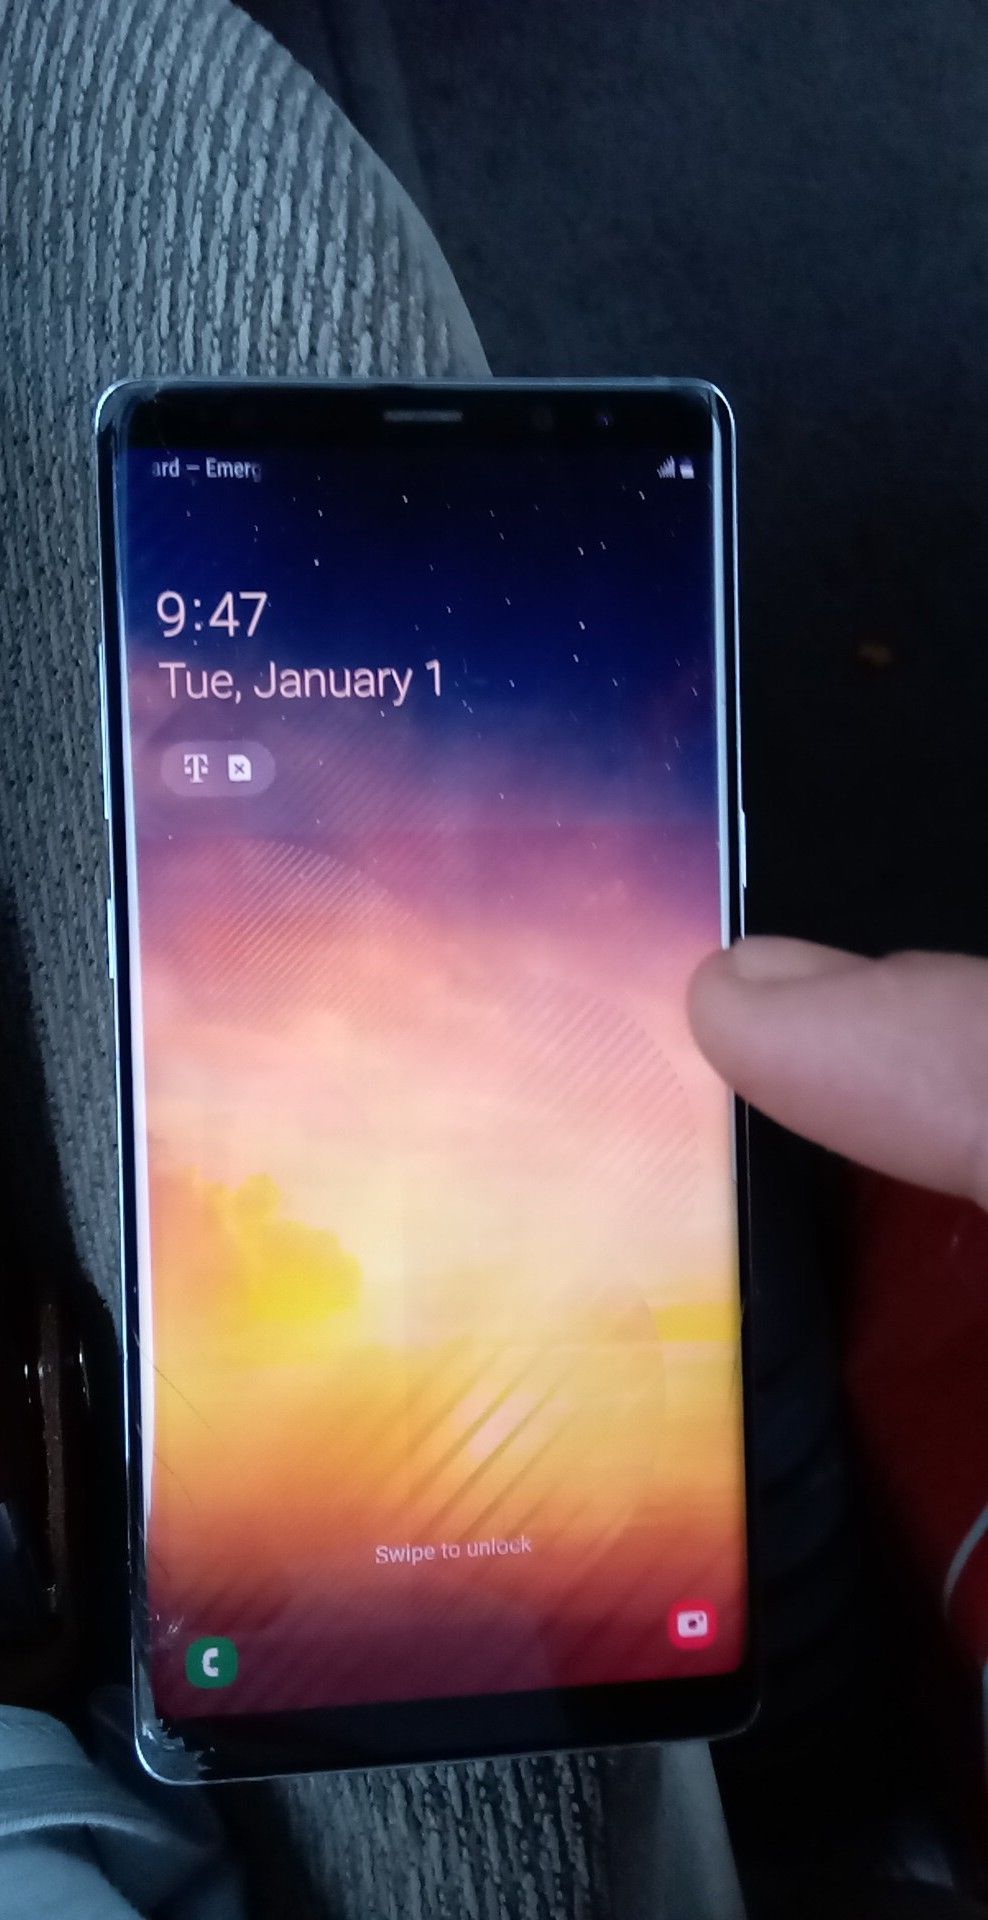 Galaxy Note 8 64gb